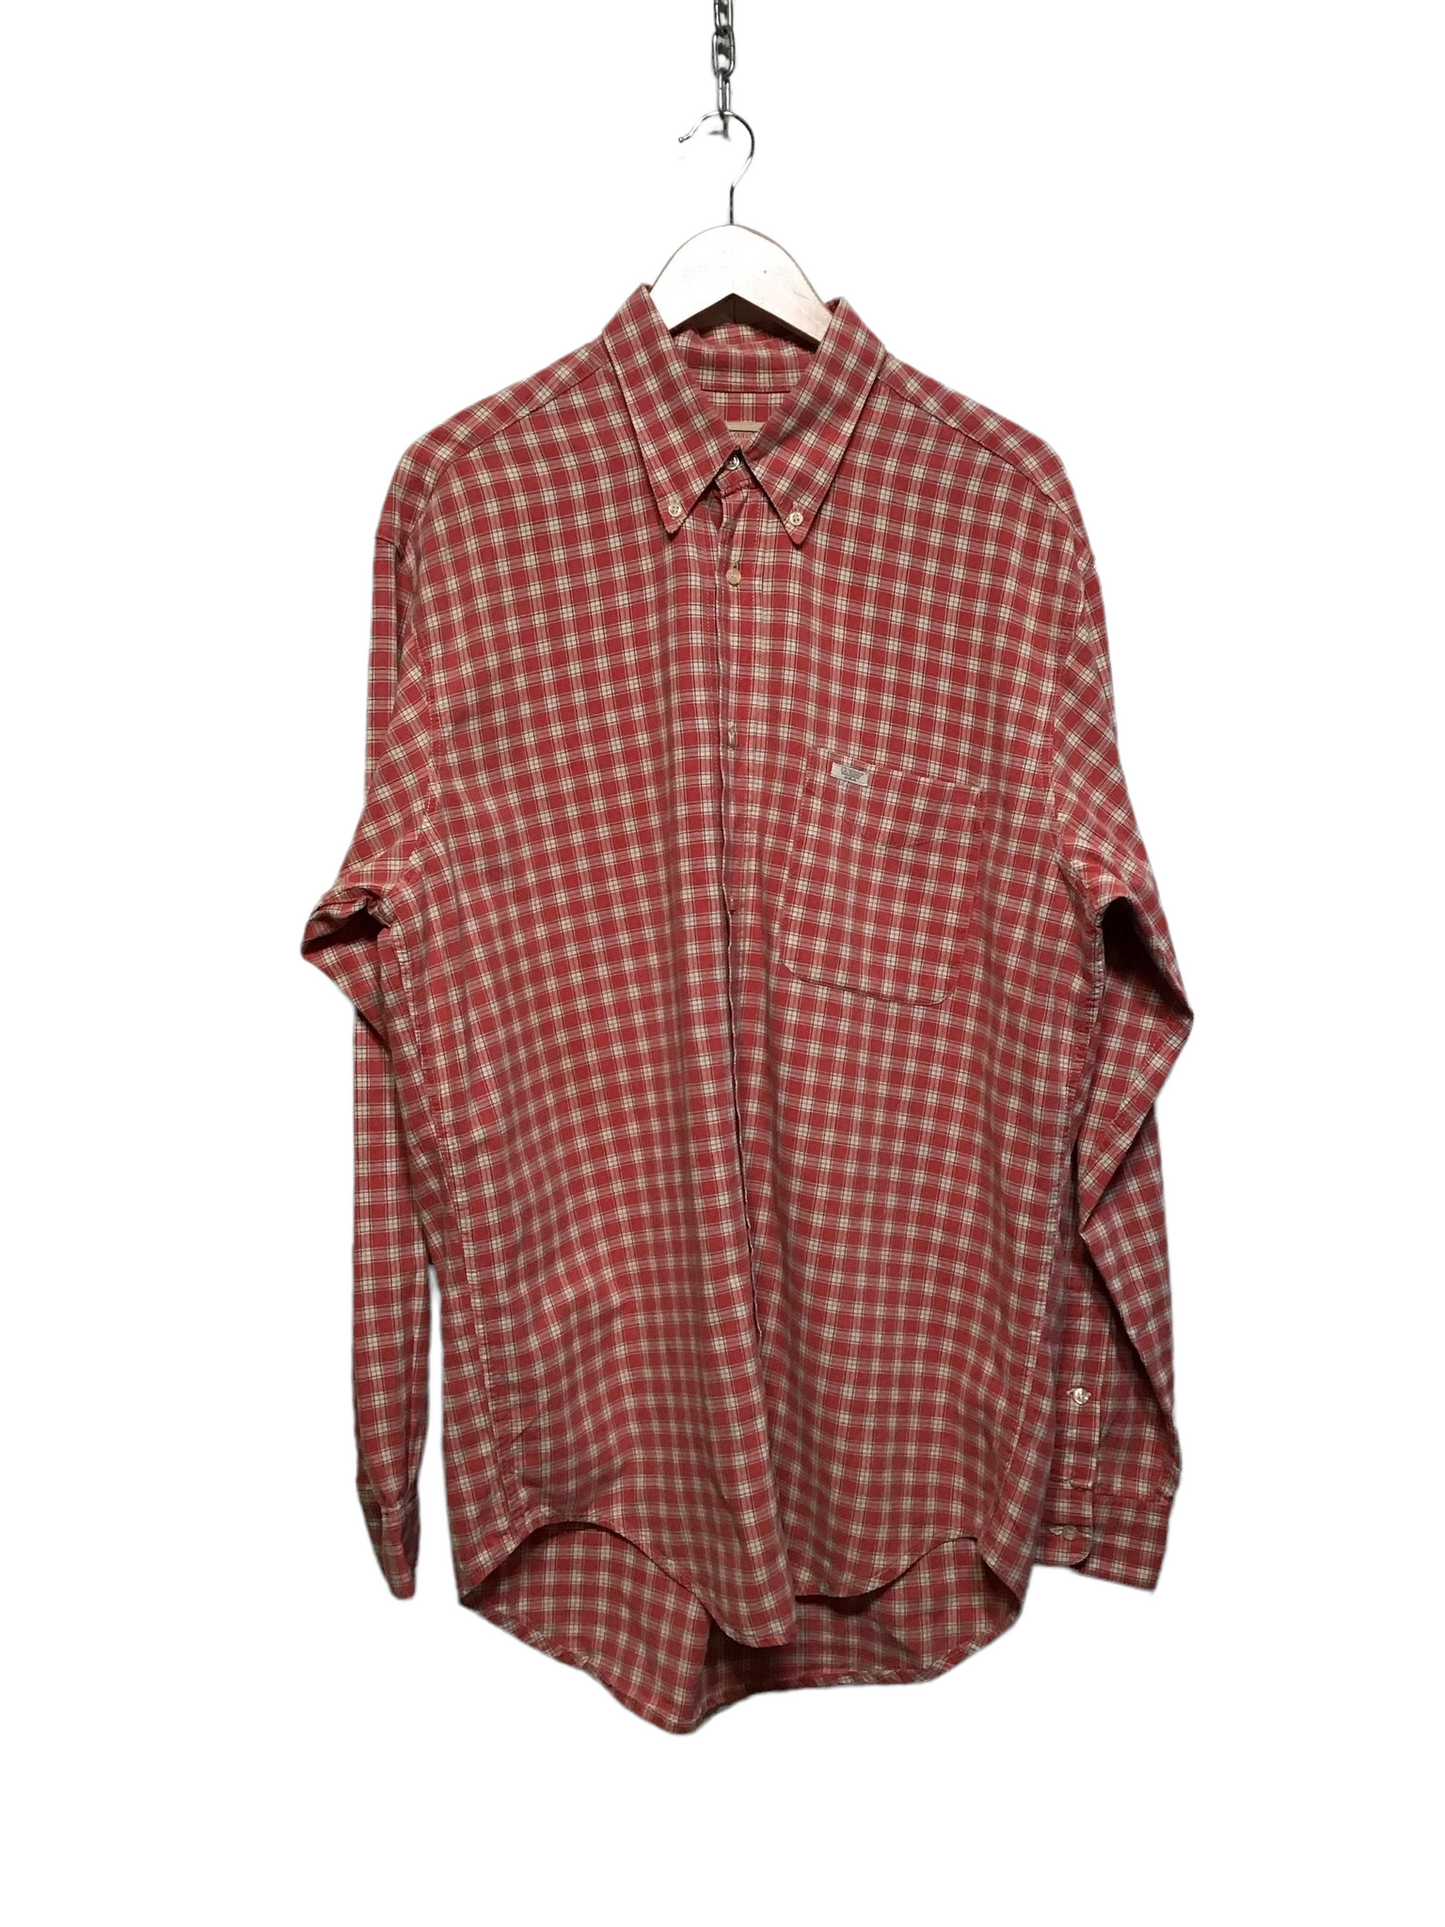 Guess Checkered Shirt (Size XL)